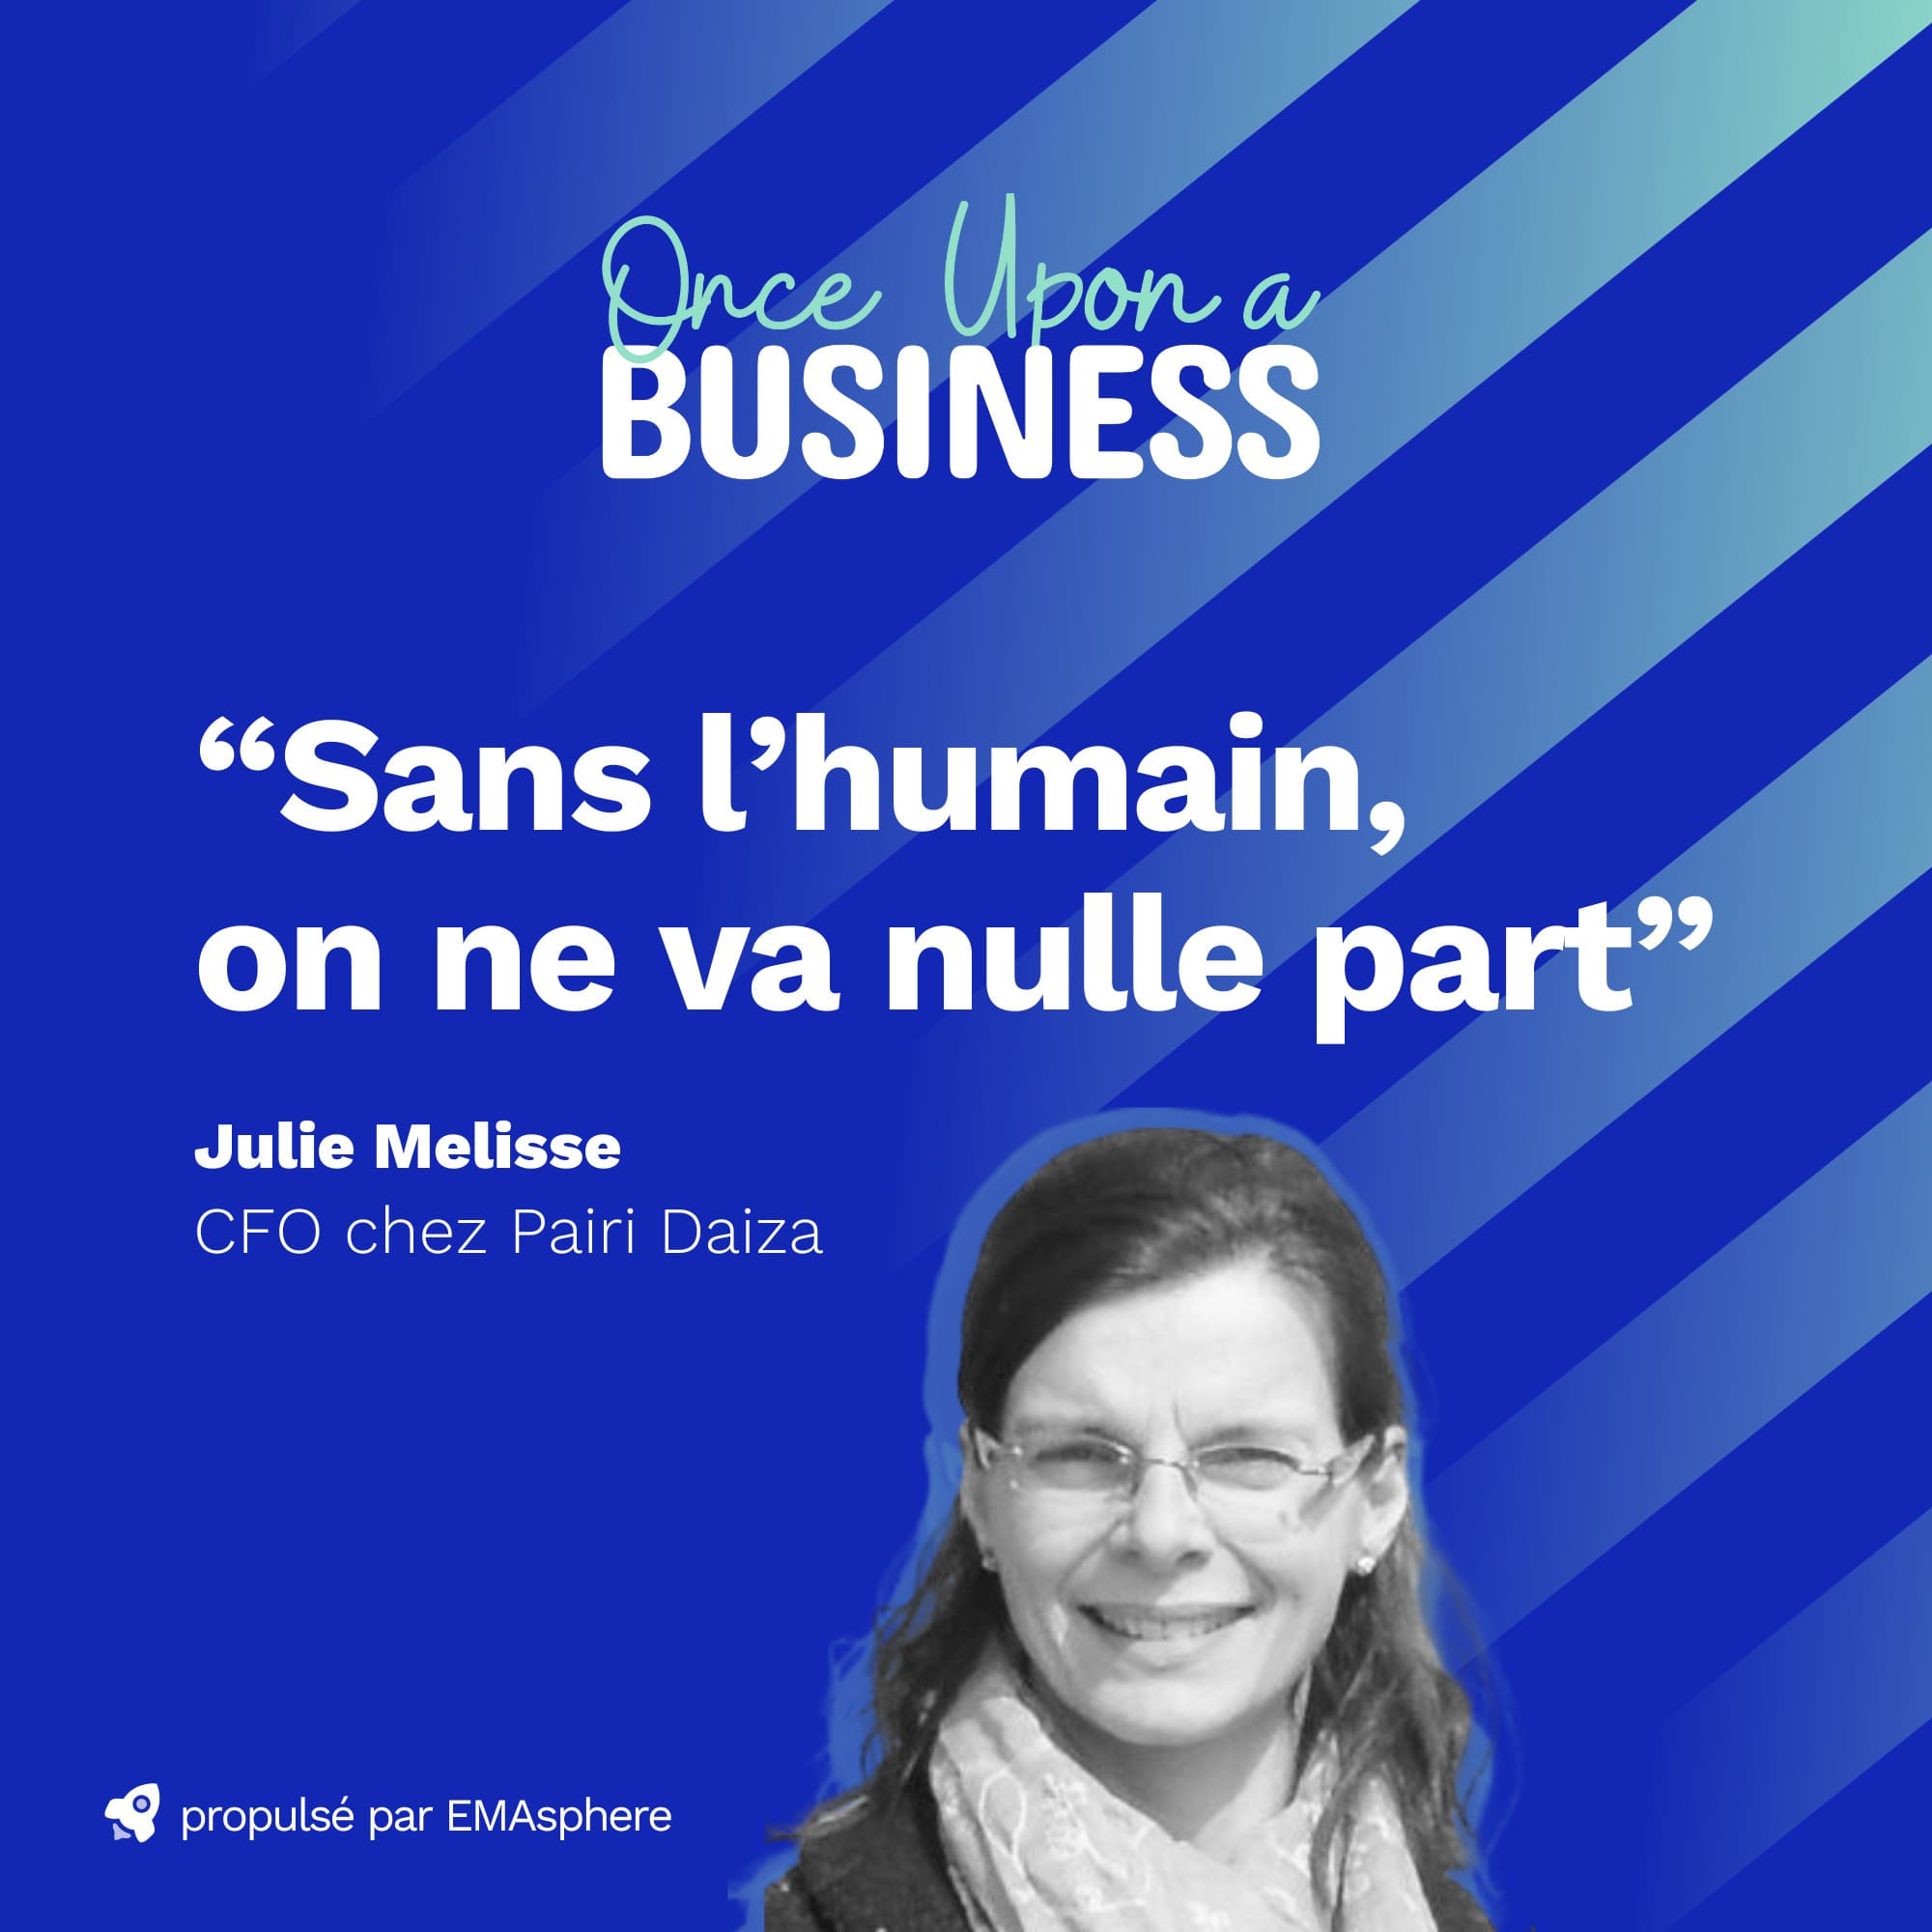 Julie Melisse est la nouvelle invitée de Once Upon a Business. 